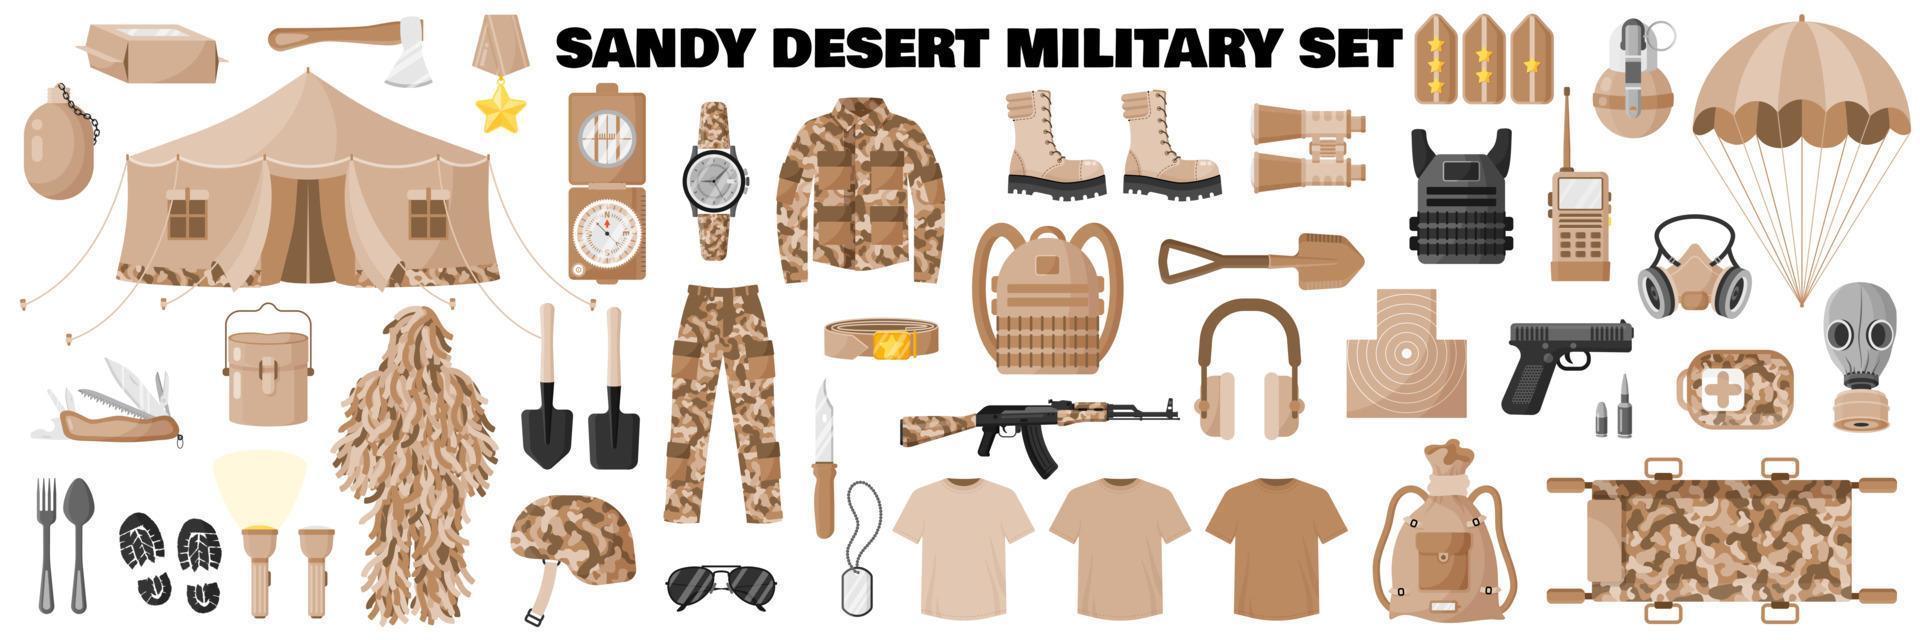 Conjunto militar de camuflagem cáqui do deserto arenoso com uniforme de soldado, camuflagem cáqui, equipamento do exército, rifle de assalto, etc. vetor